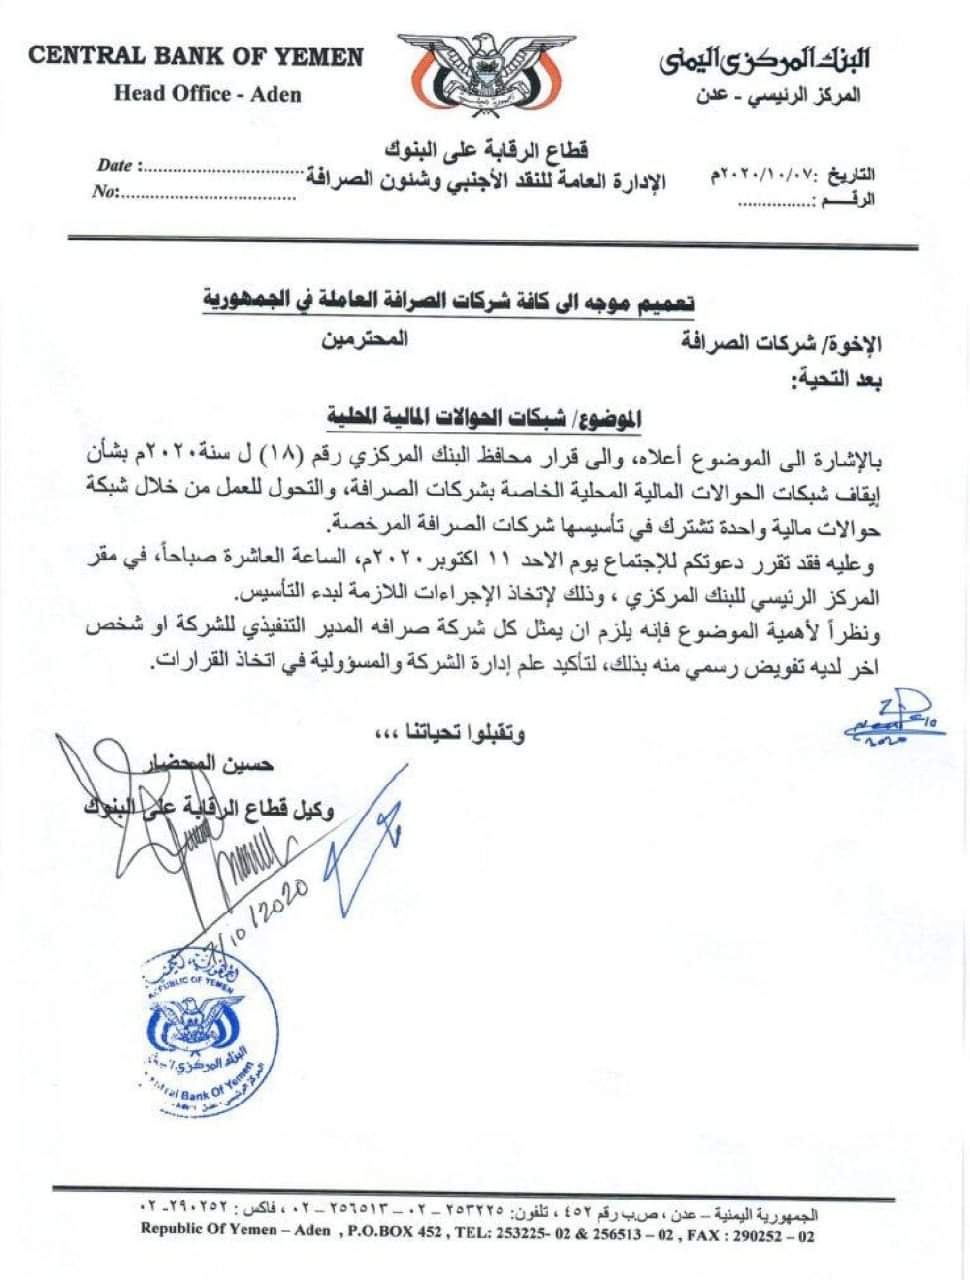 البنك المركزي في عدن يوجه دعوة لشركات الصرافة لاجتماع موسع الأحد القادم 